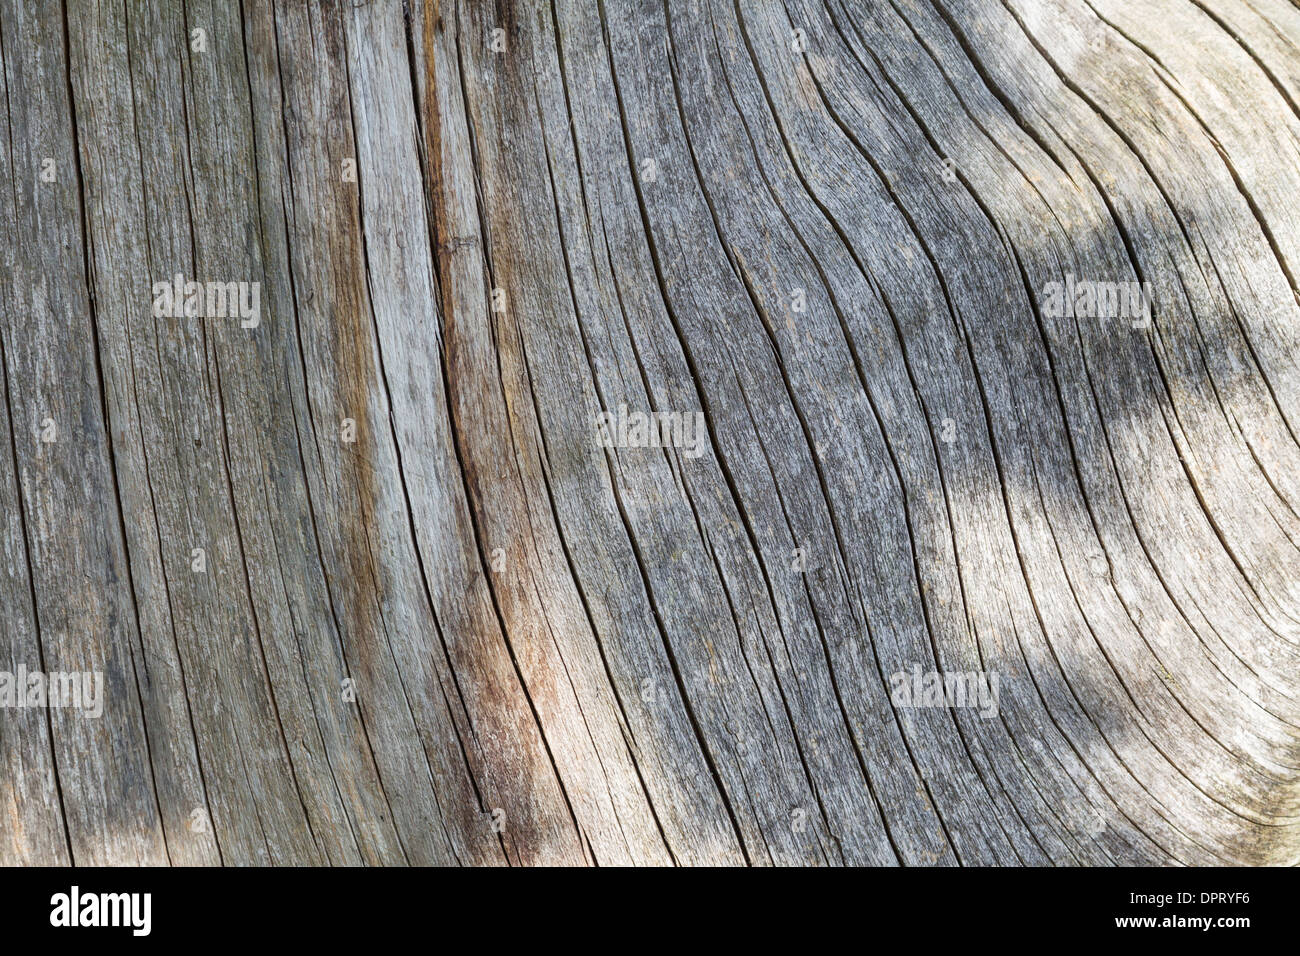 Holz Holzmaserung braun hintergrund muster contenedores de madera de grano marrón de trama de fondo muertos Foto de stock